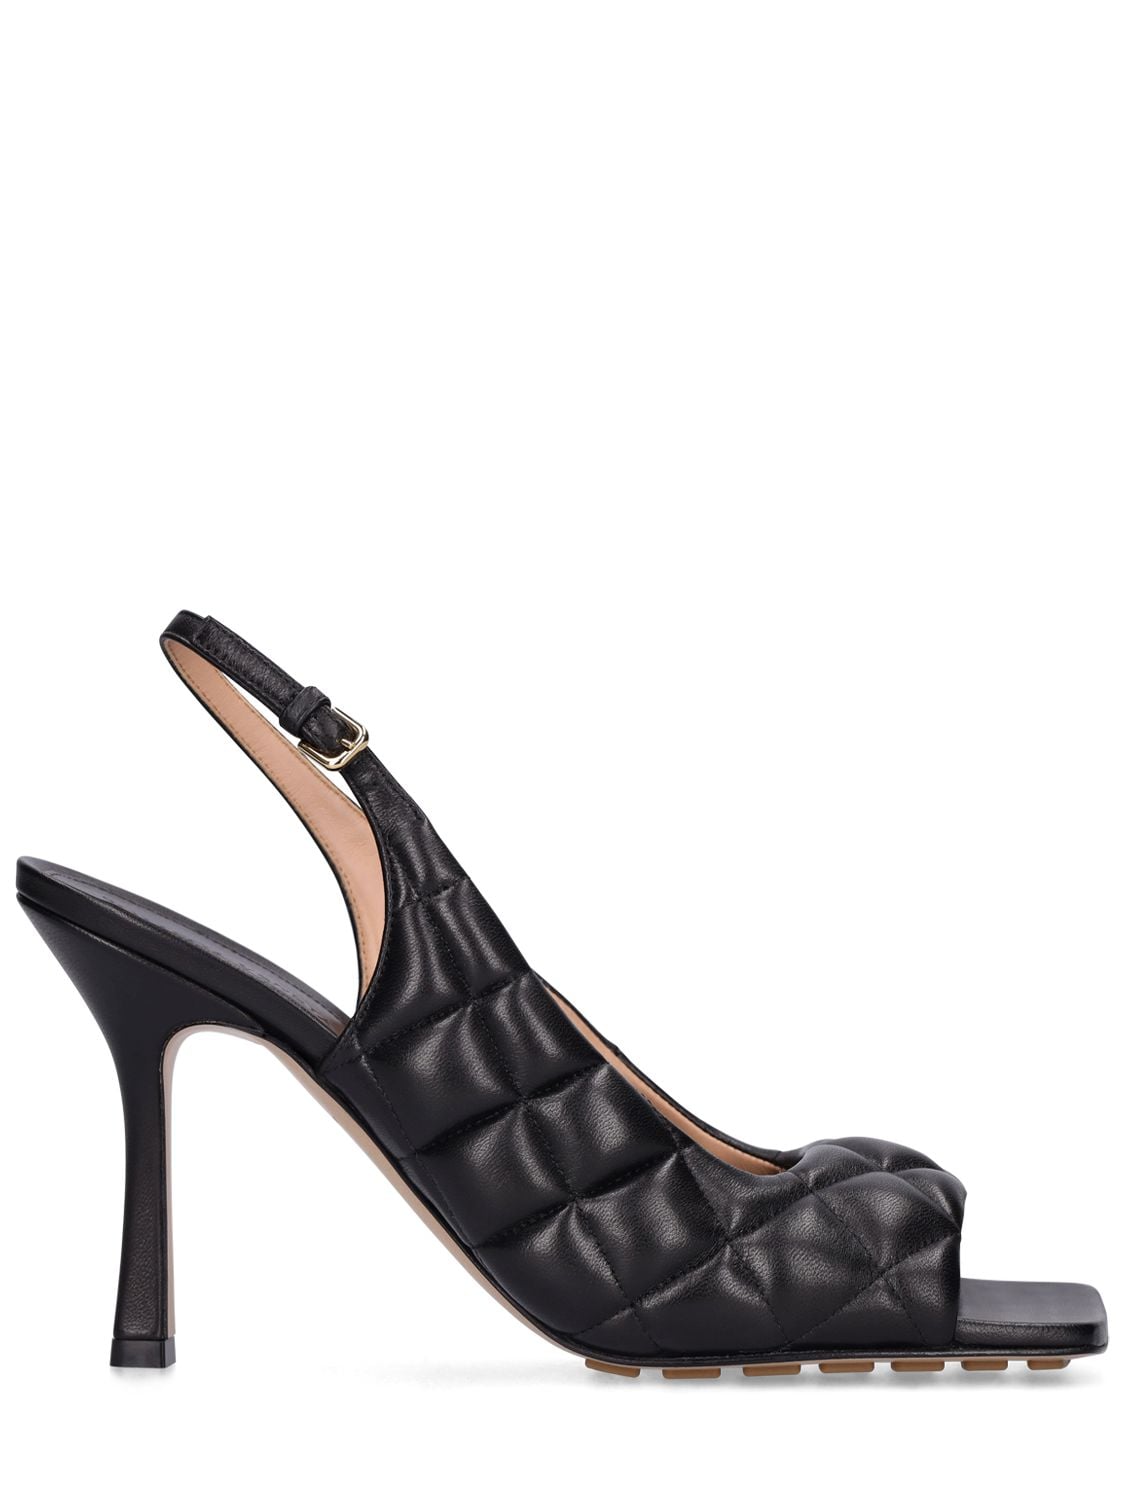 Bottega Veneta 90mm Padded Leather Sandals In Black